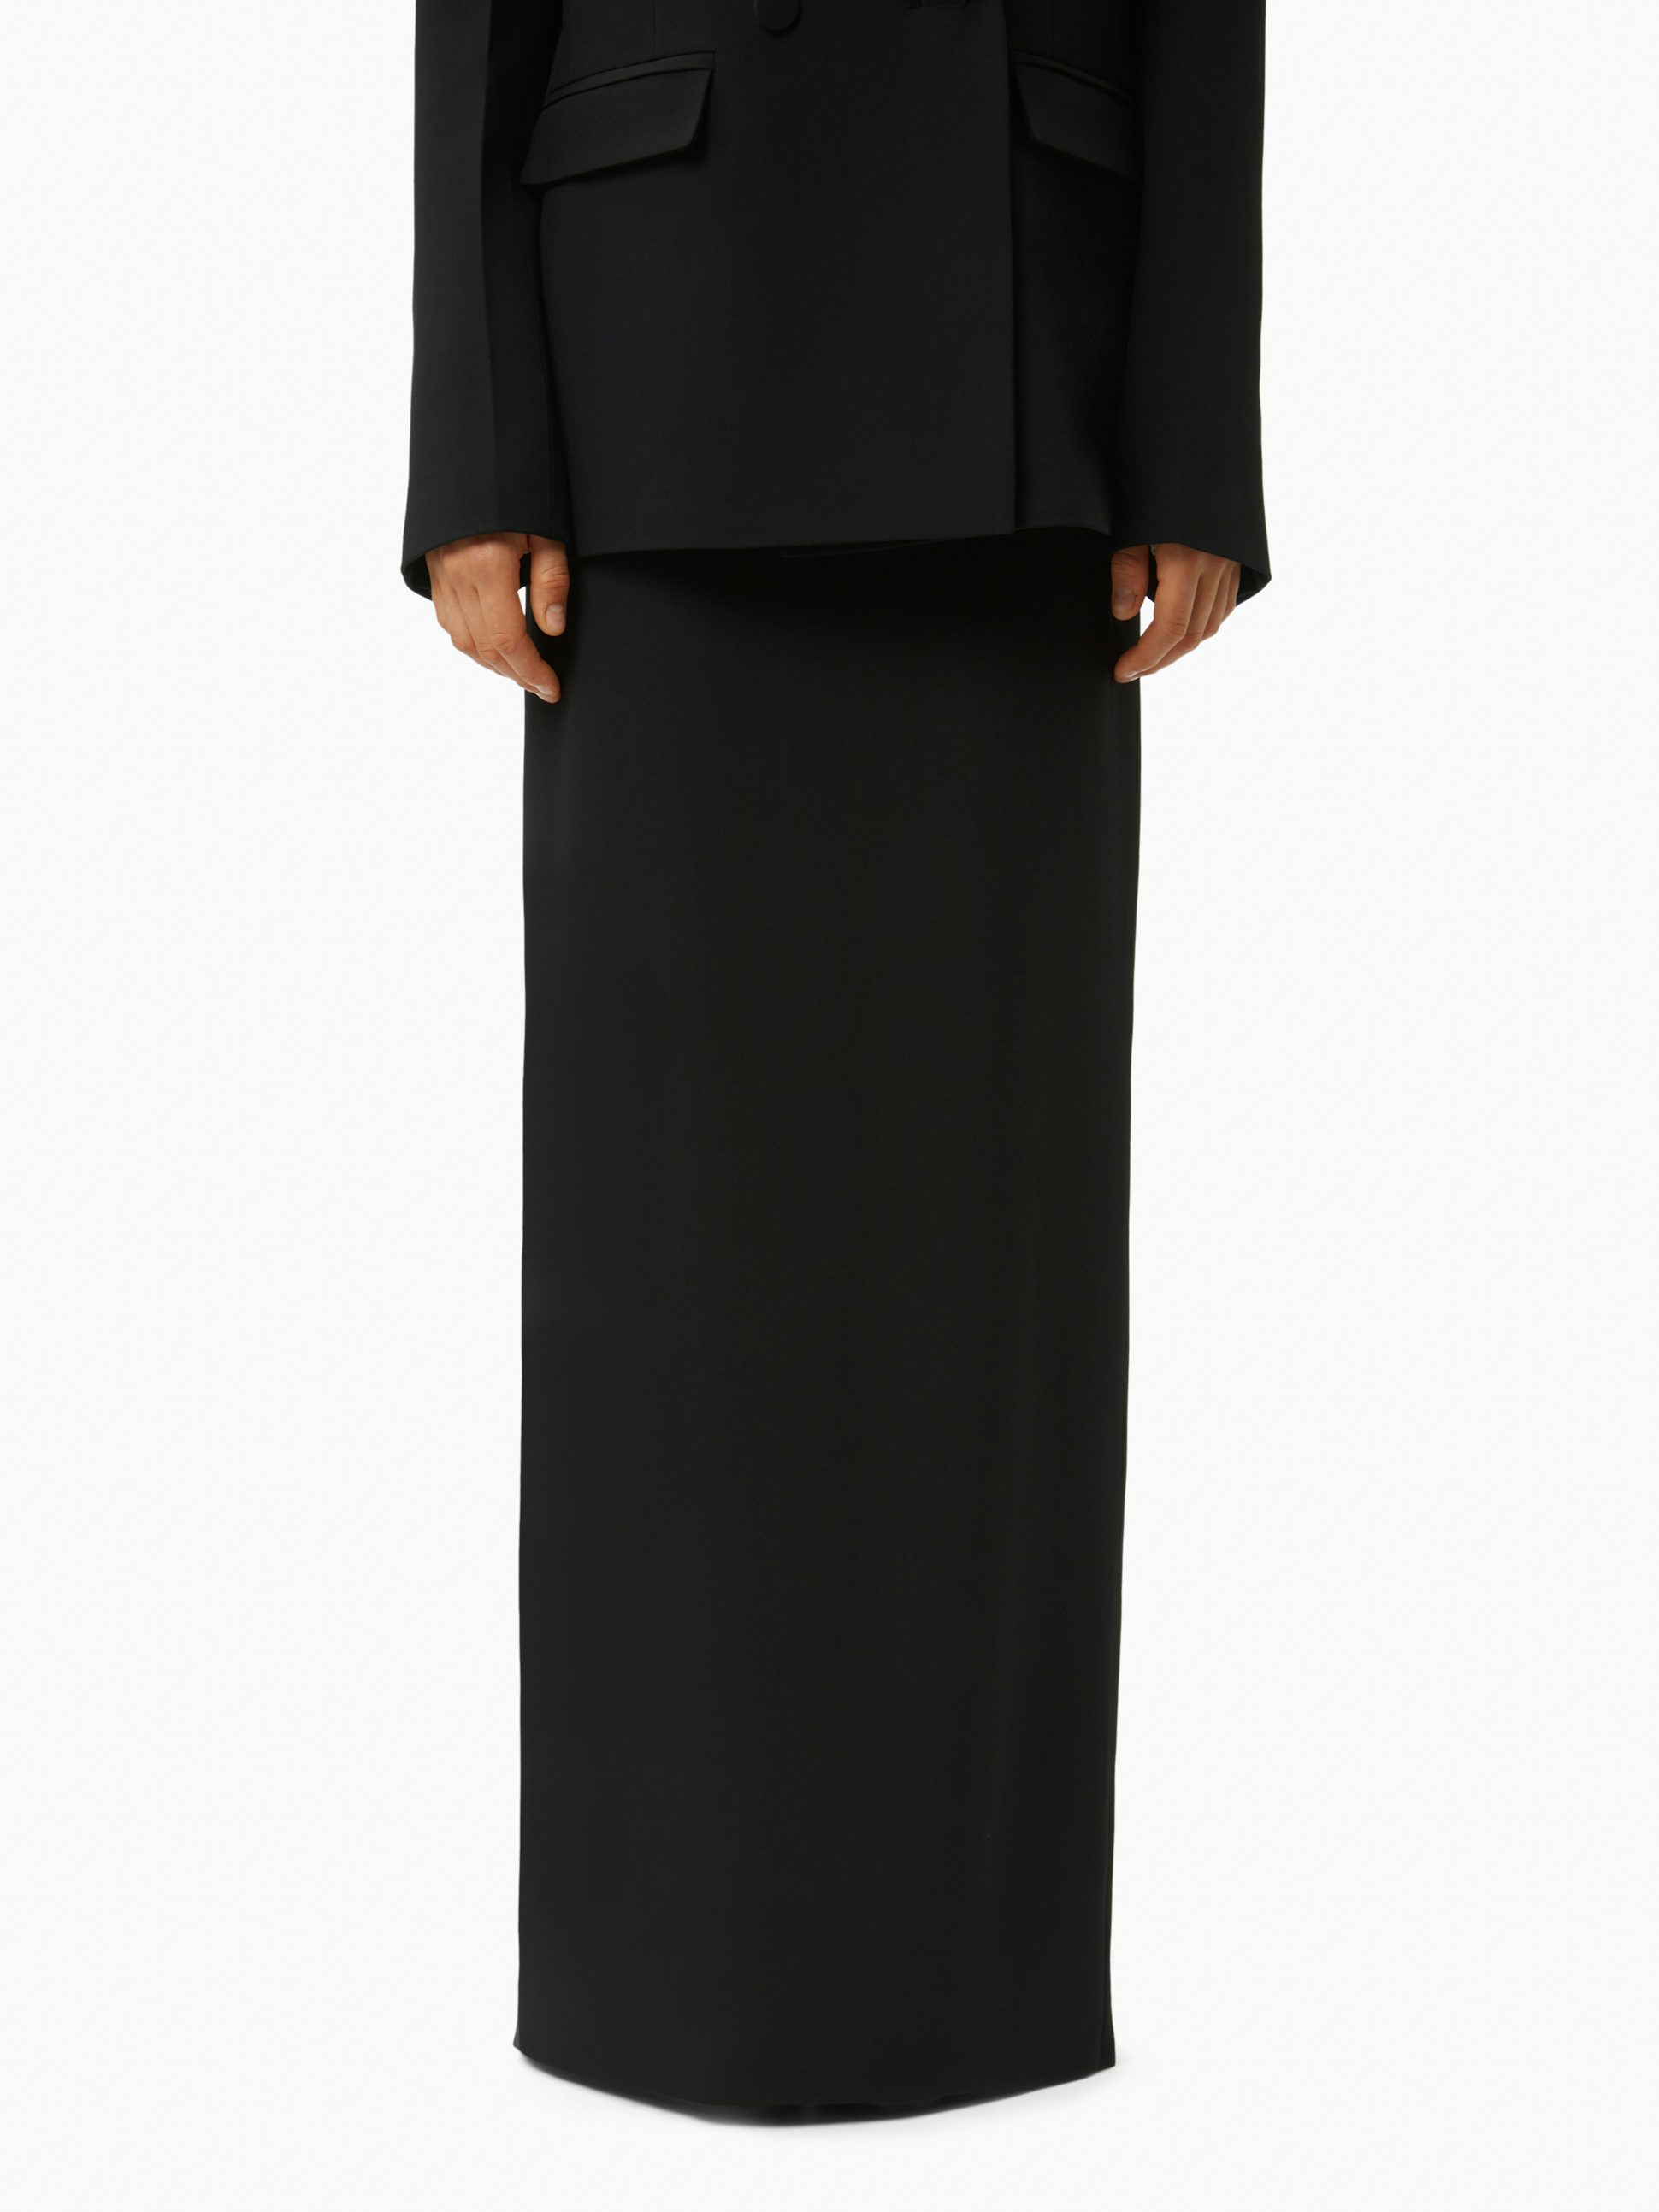 Long pencil skirt in black - Nina Ricci